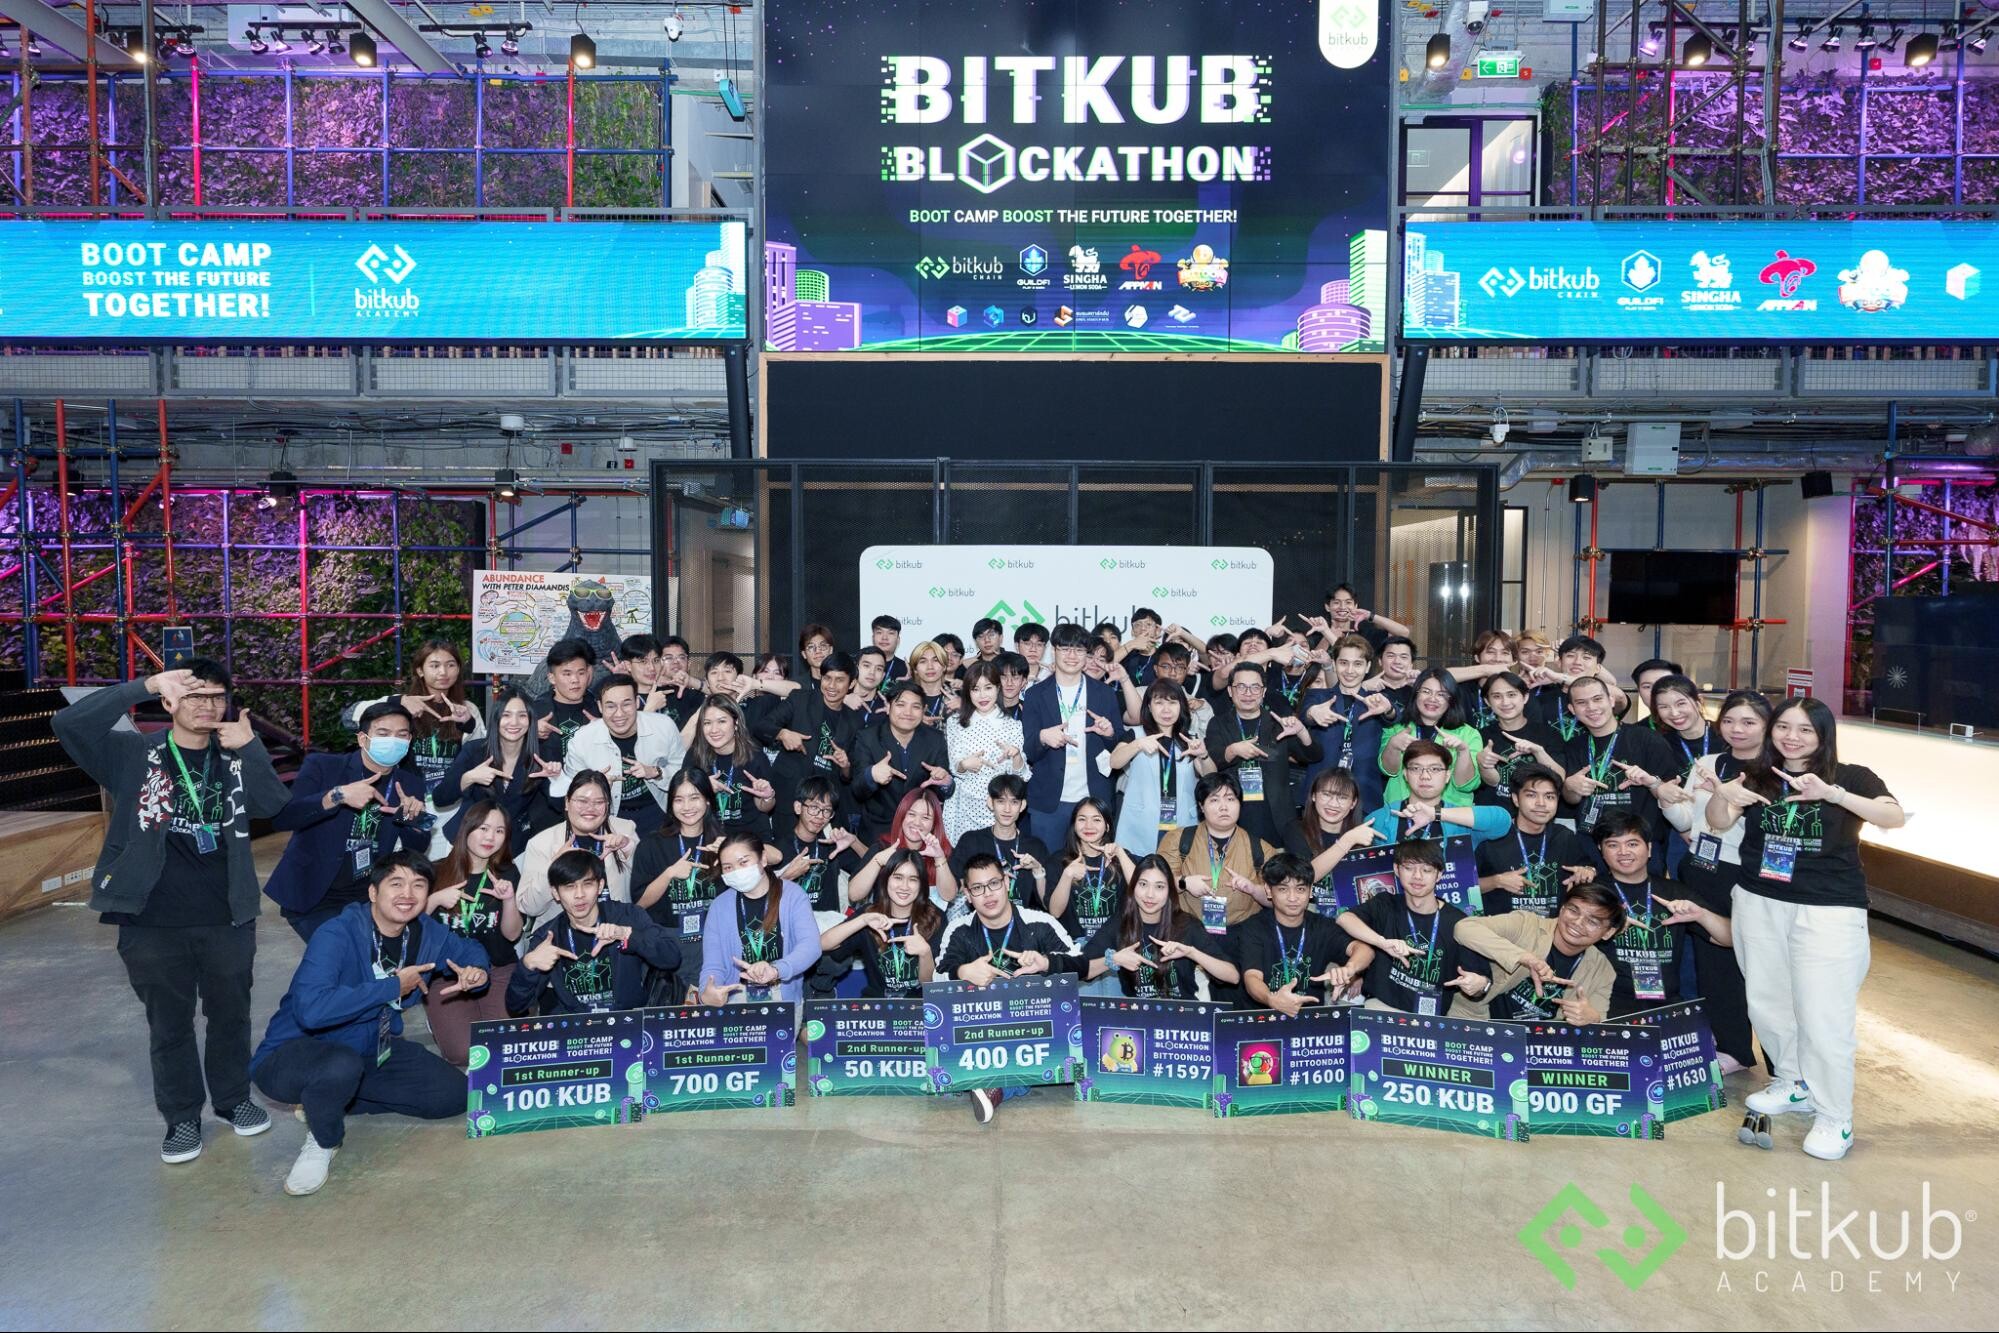 "Bitkub Academy Blockathon Boot Camp" ค่ายอบรมสุดร้อนแรงแห่งปี เสริมทักษะให้ก้าวทันโลกเทคโนโลยีในยุคดิจิทัลดิสรัปชัน